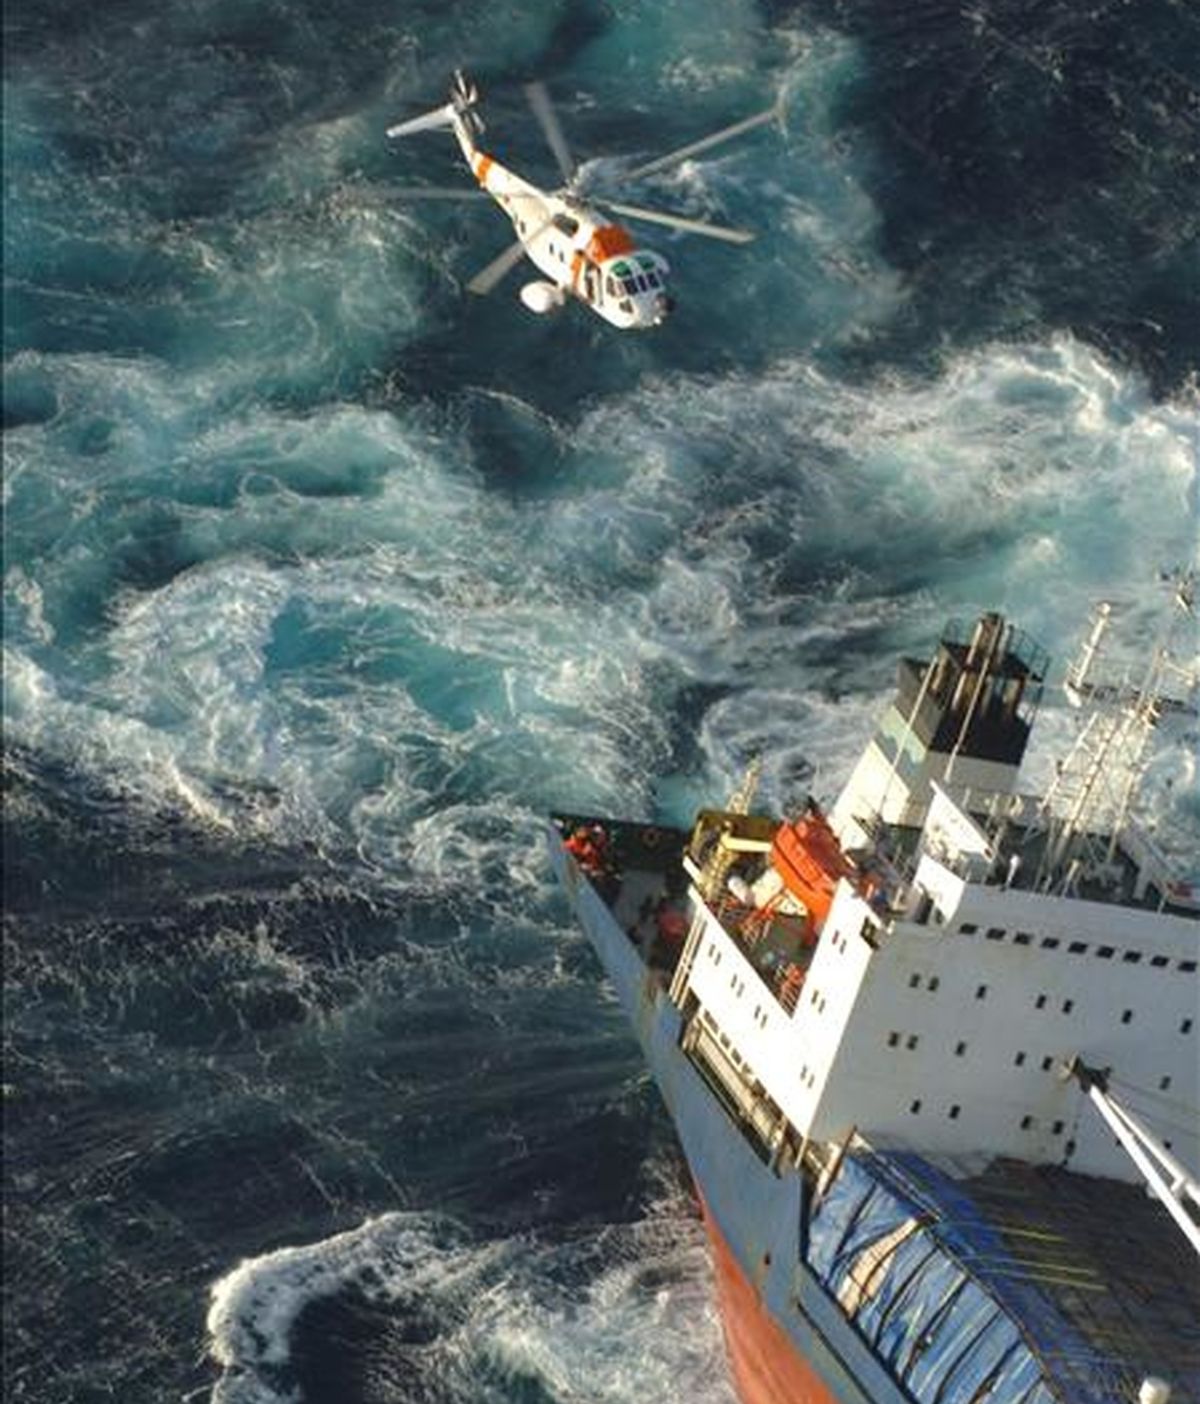 Fotografía facilitada por Salvamento Marítimo de un helicóptero trabajando en las labores de rescate de los 17 tripulantes del mercante "North Spirit". EFE